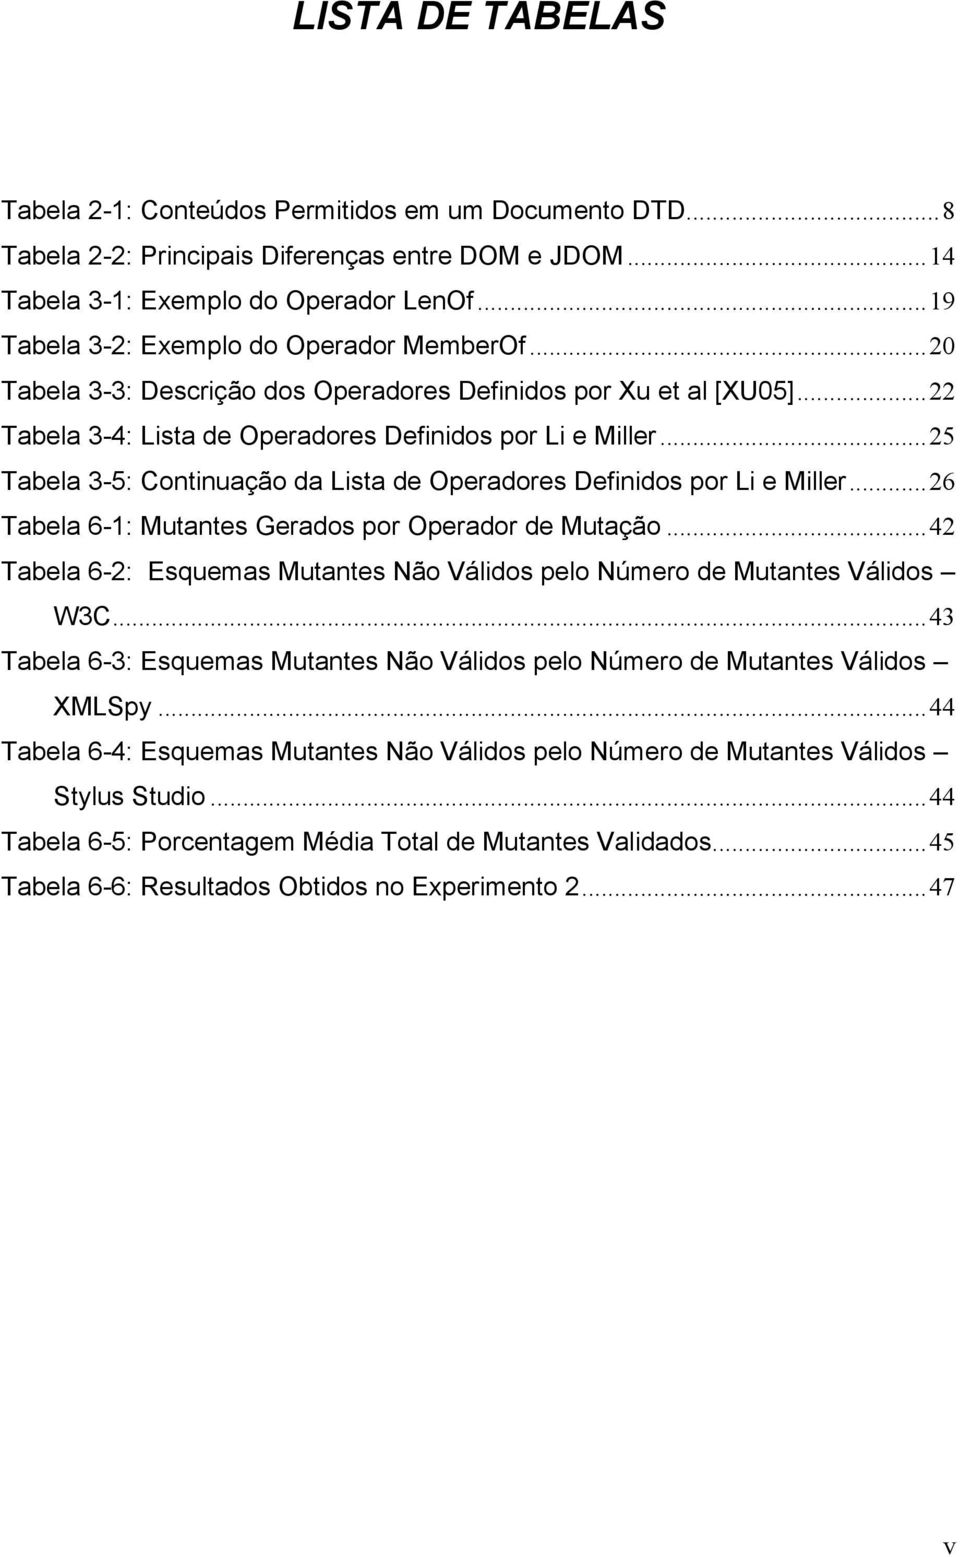 ..25 Tabela 3-5: Continuação da Lista de Operadores Definidos por Li e Miller...26 Tabela 6-1: Mutantes Gerados por Operador de Mutação.